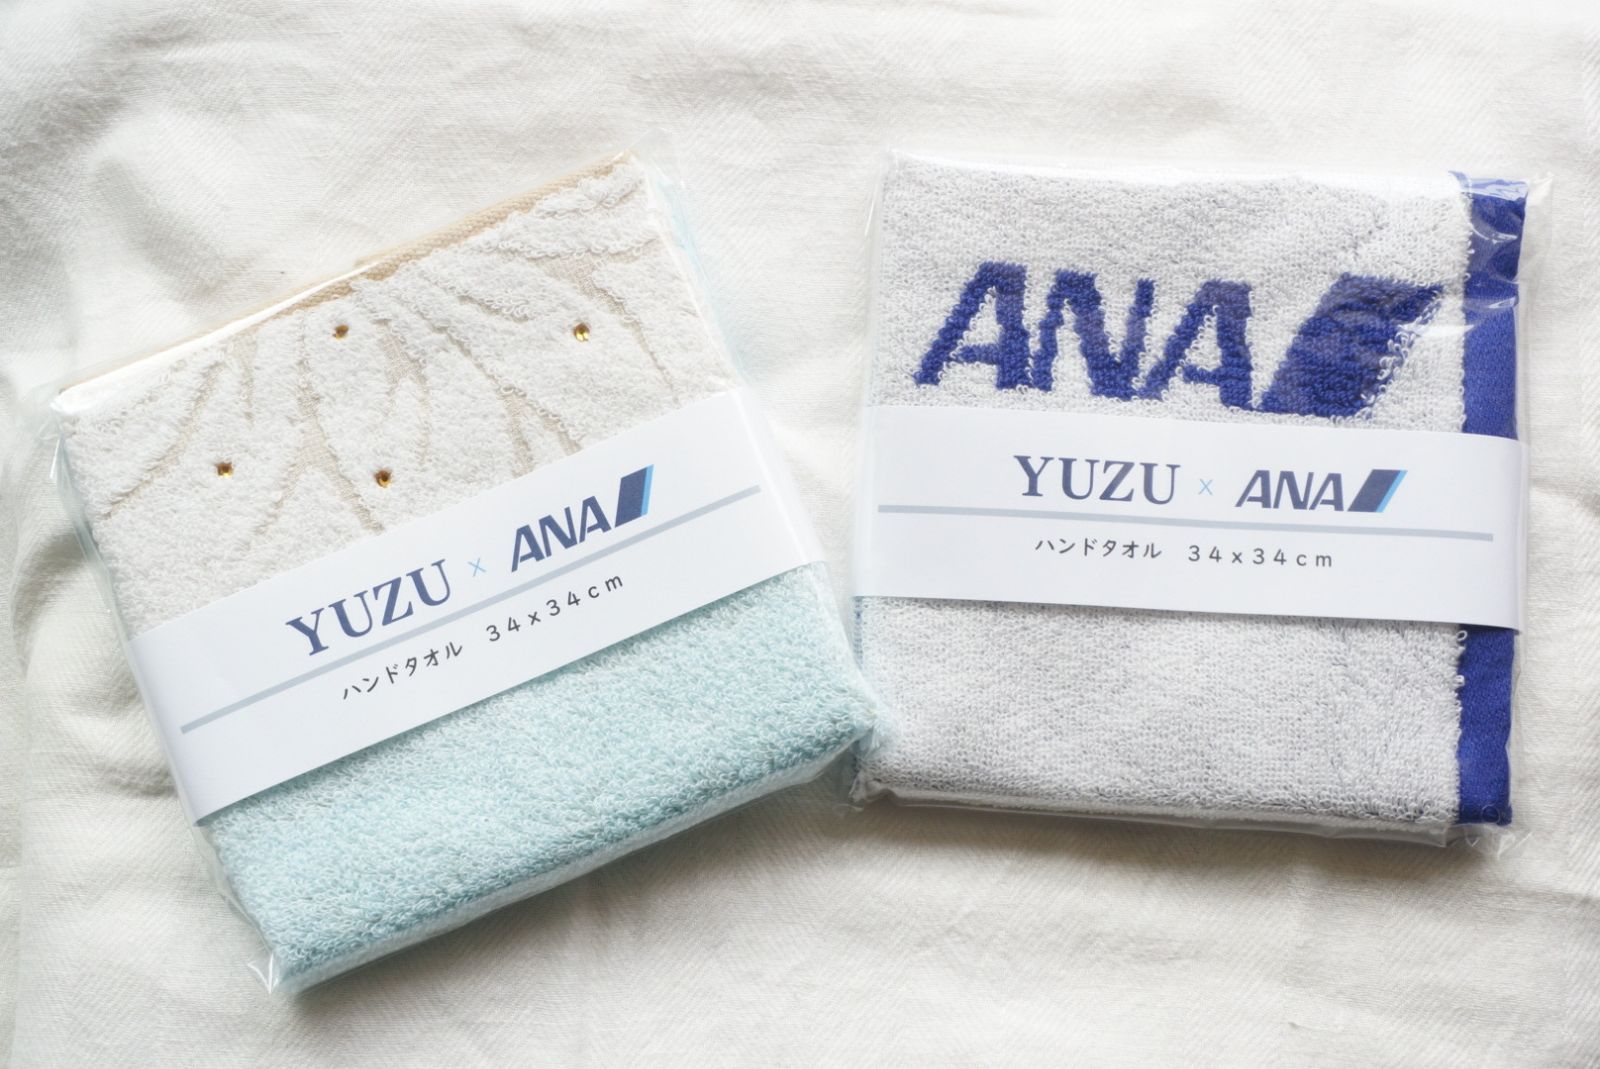 【搭乗者限定】ANA 羽生結弦 YUZU ハンドタオル 2枚セット【新品未開封】